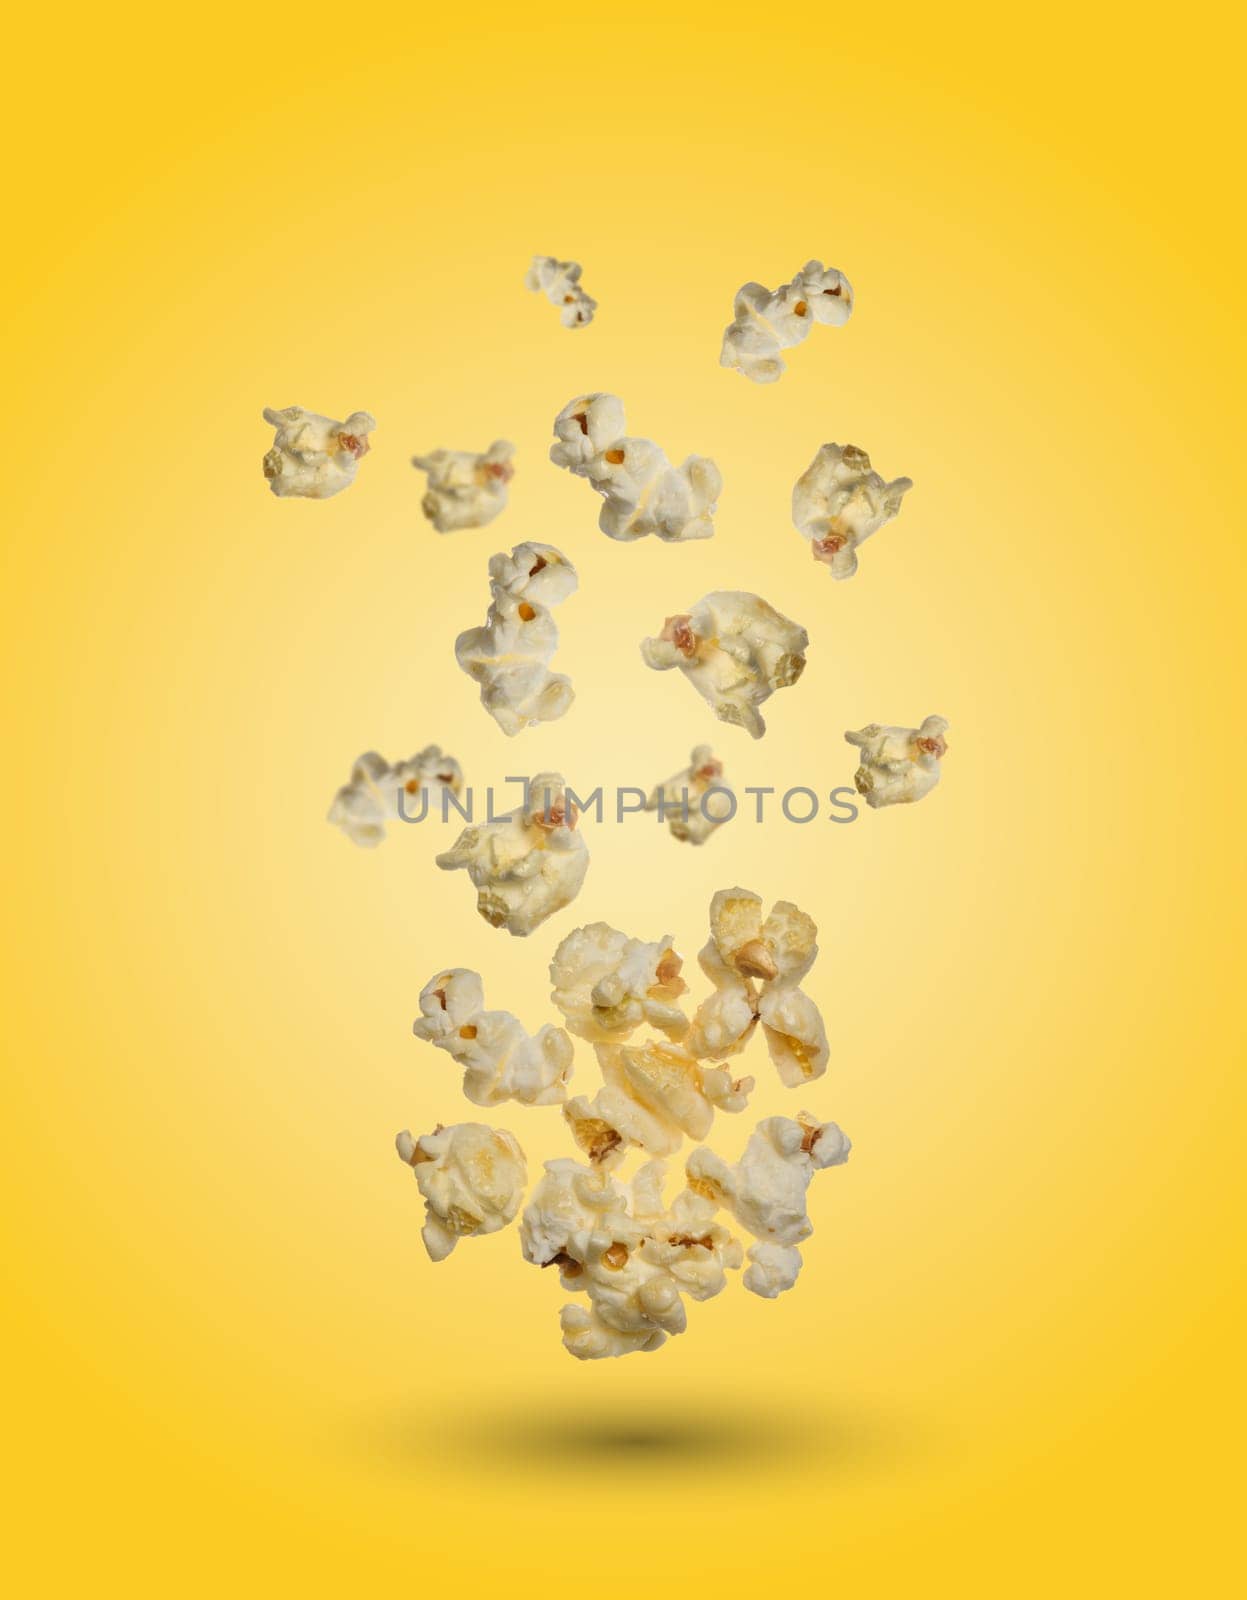 Sweet popcorn on a yellow background by ndanko